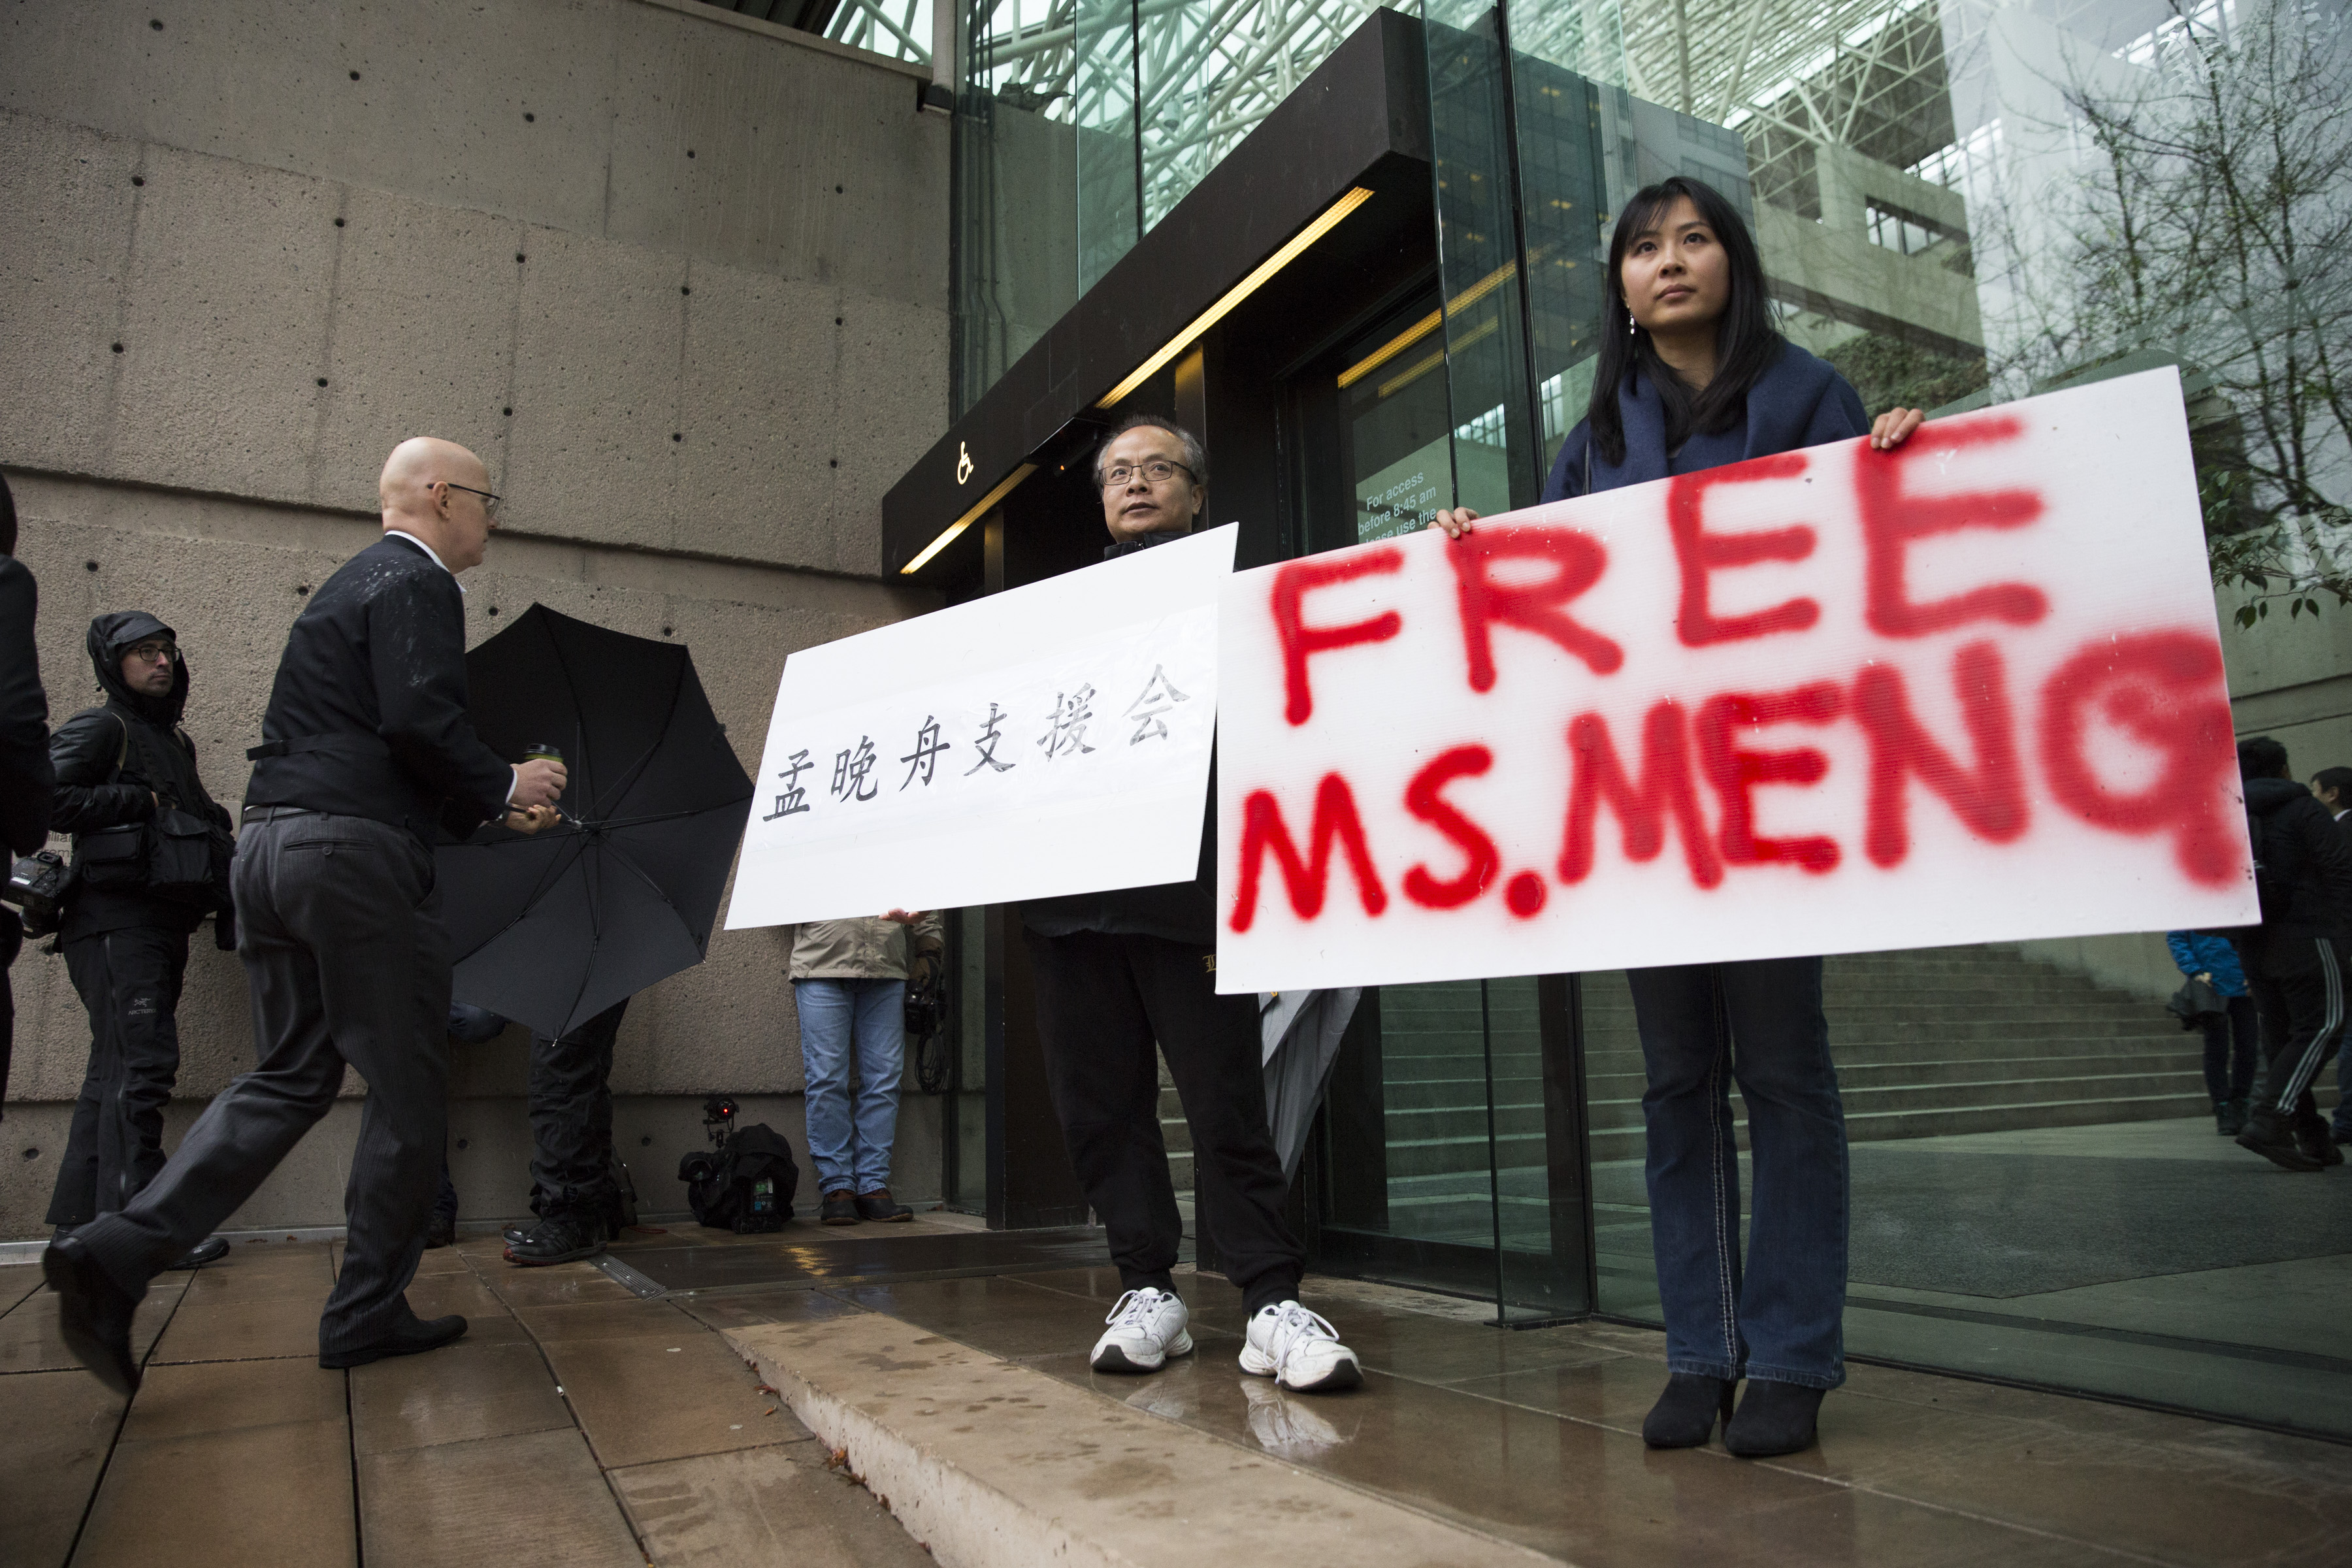 Elengedik a Huawei letartóztatott pénzügyi igazgatóját, 10 millió kanadai dollár óvadékért cserébe